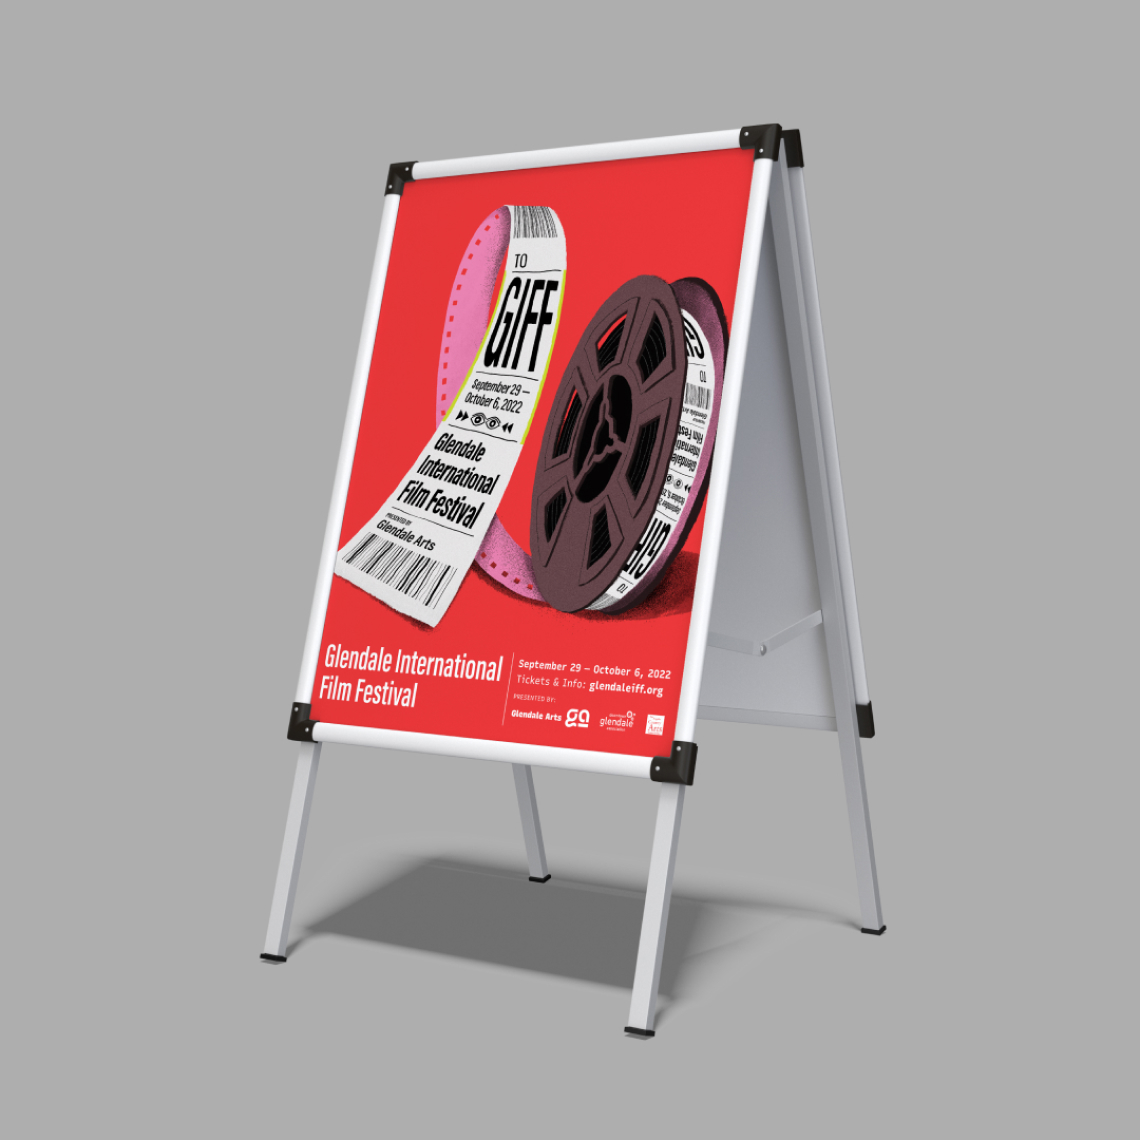 Glendale International Film Festival Instagram Poster on Easel Stand designed by Kilter.